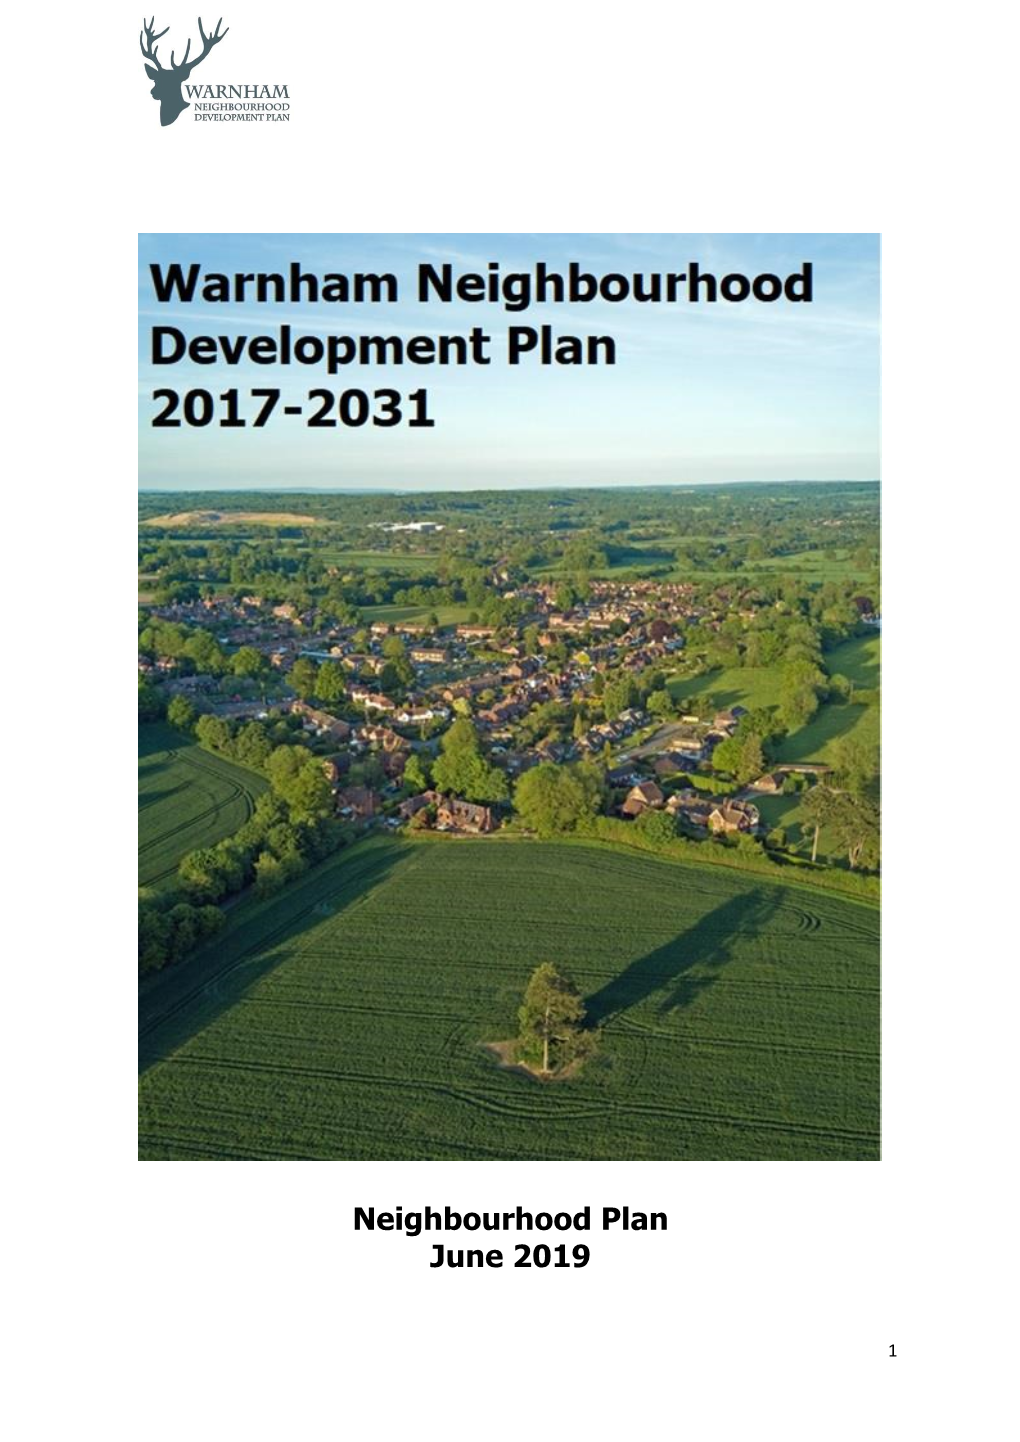 The Warnham Neighbourhood Development Plan 2017 to 2031